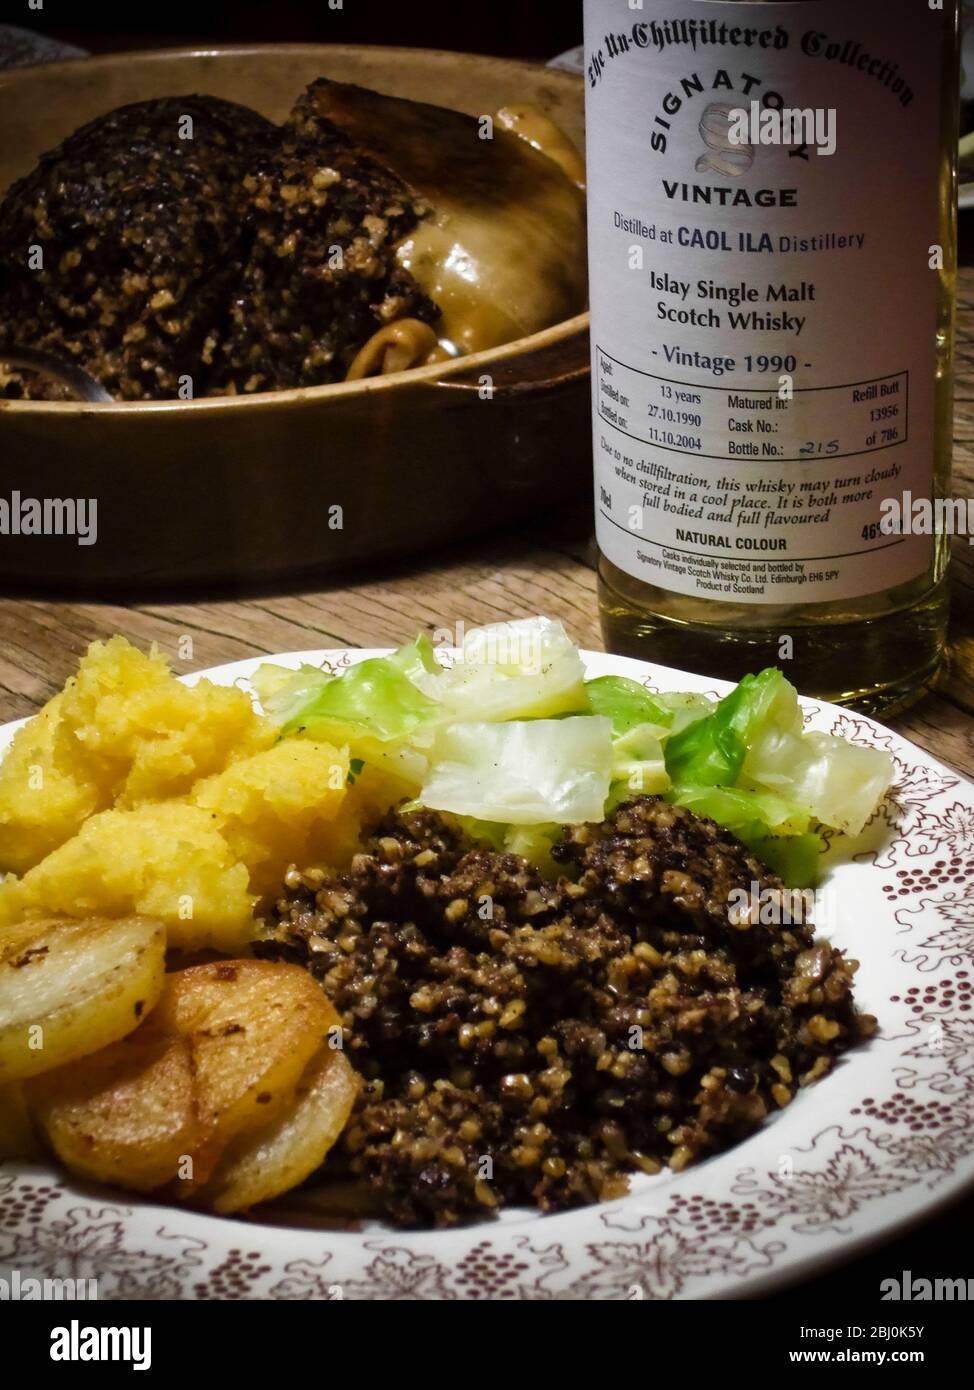 Haggis con whisky superior para la noche de Burns, servido con acompañamiento tradicional de 'Bashed neeps' (puré de ovejas) pero con la adición de salteado p Foto de stock